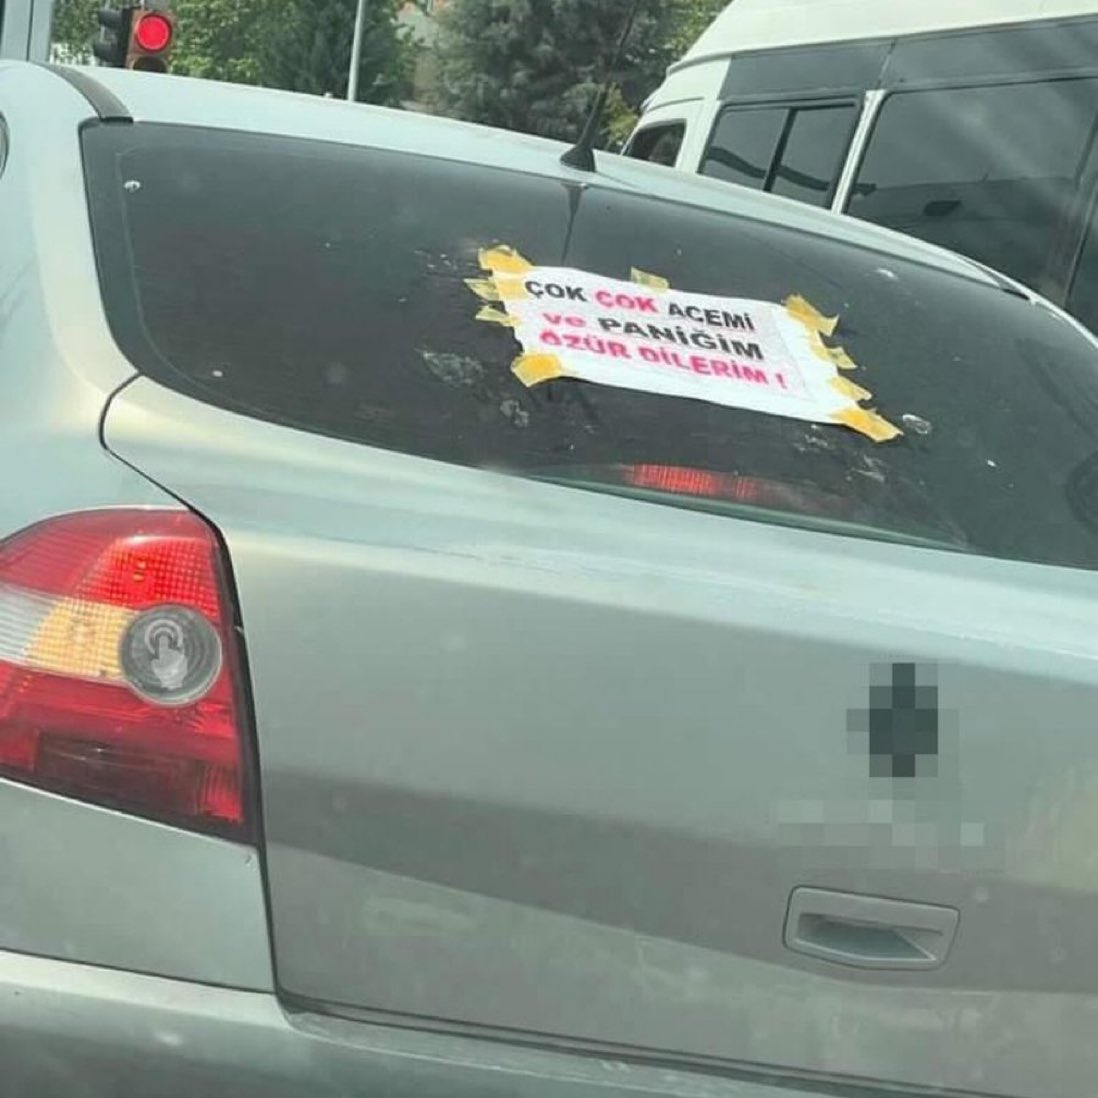 Elazığ'da bir sürücünün aracına astığı yazı:

'Çok çok acemi ve paniğim. Özür dilerim.'